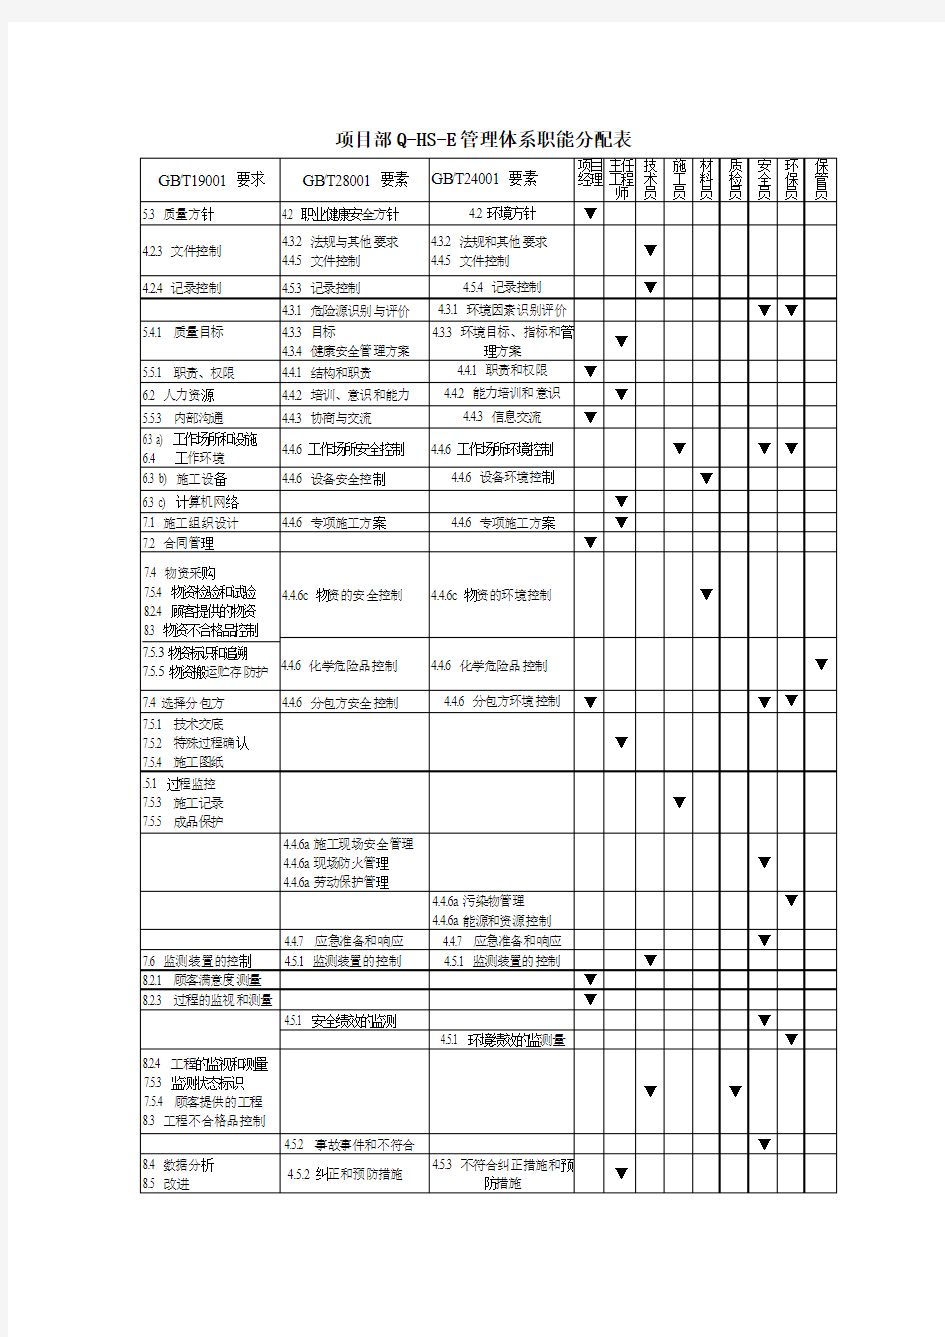 建筑工程项目部Q-HS-E管理体系职能分配表